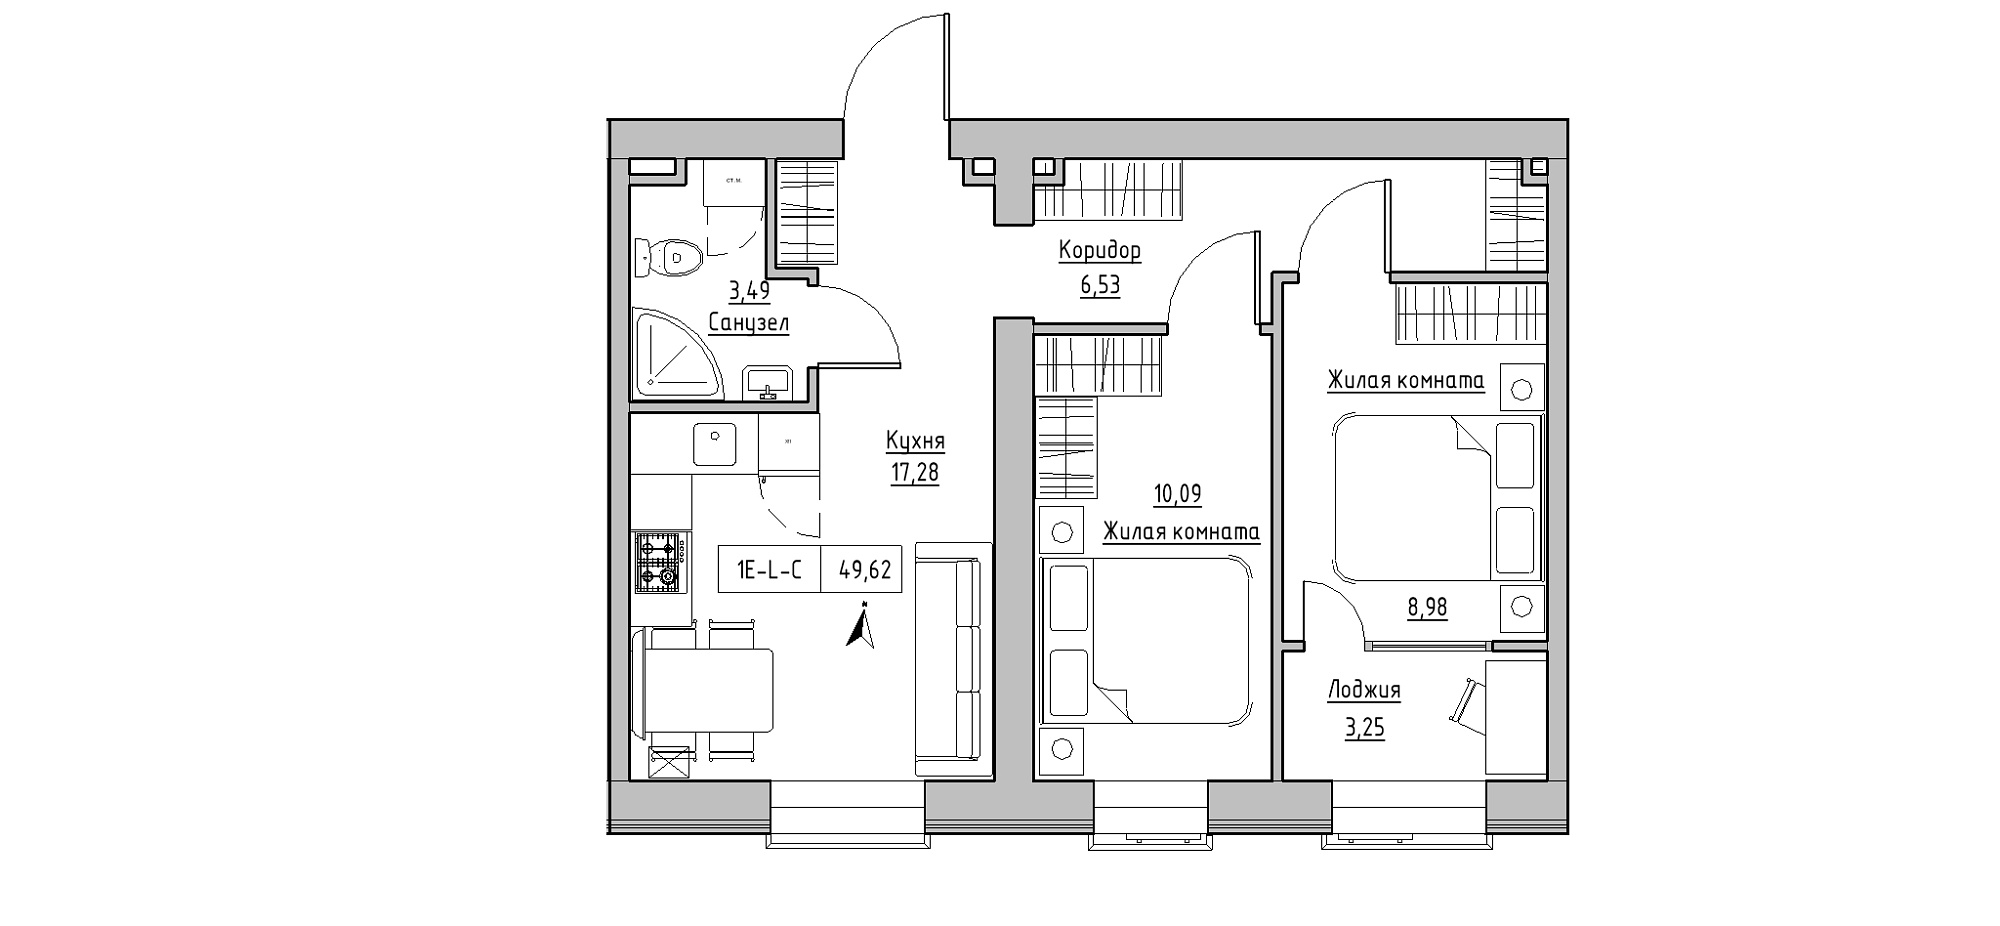 Планування 2-к квартира площею 49.62м2, KS-020-01/0007.